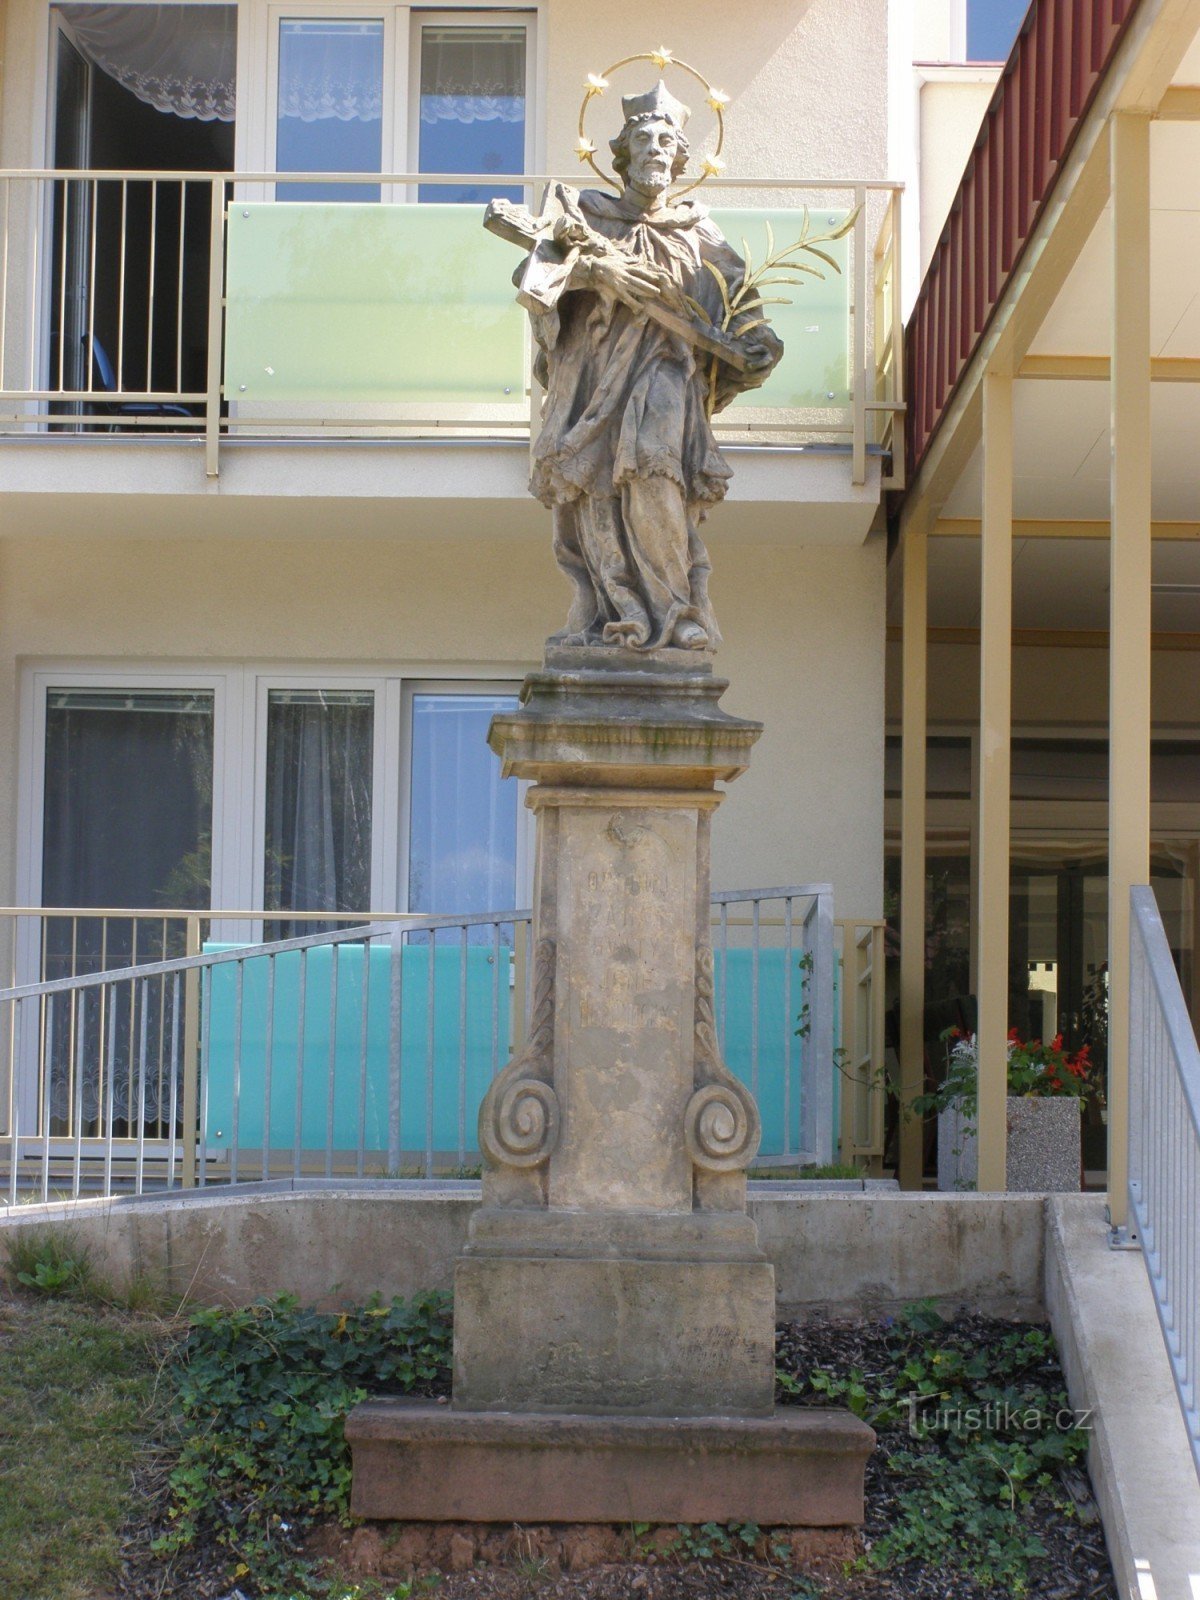 Nová Paka - Nepomuk 的圣约翰雕像